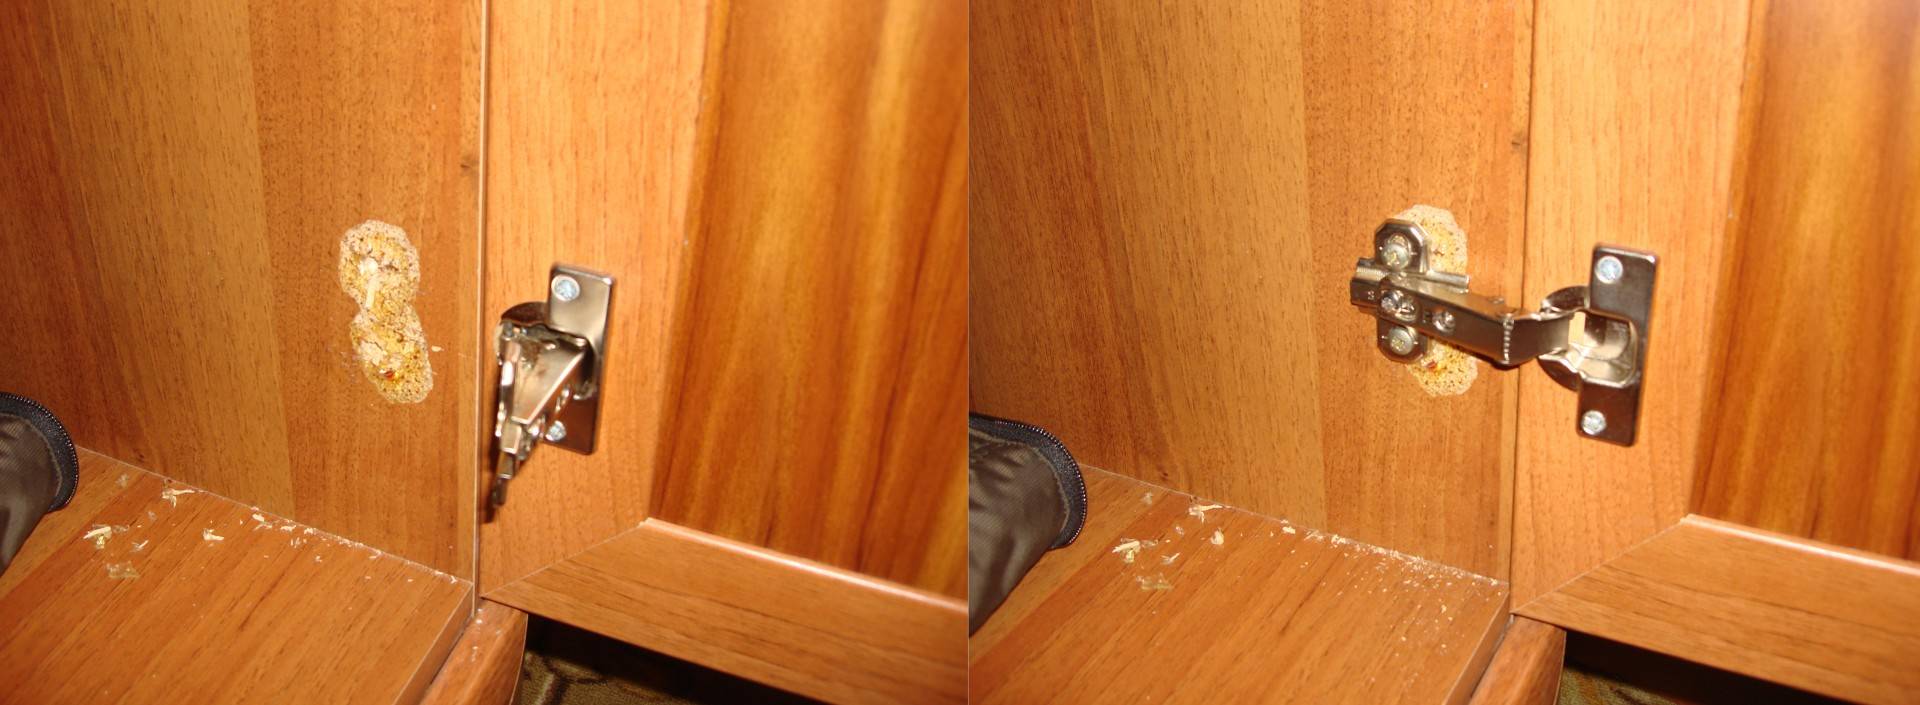 Как отремонтировать дверь шкафа если вырваны петли